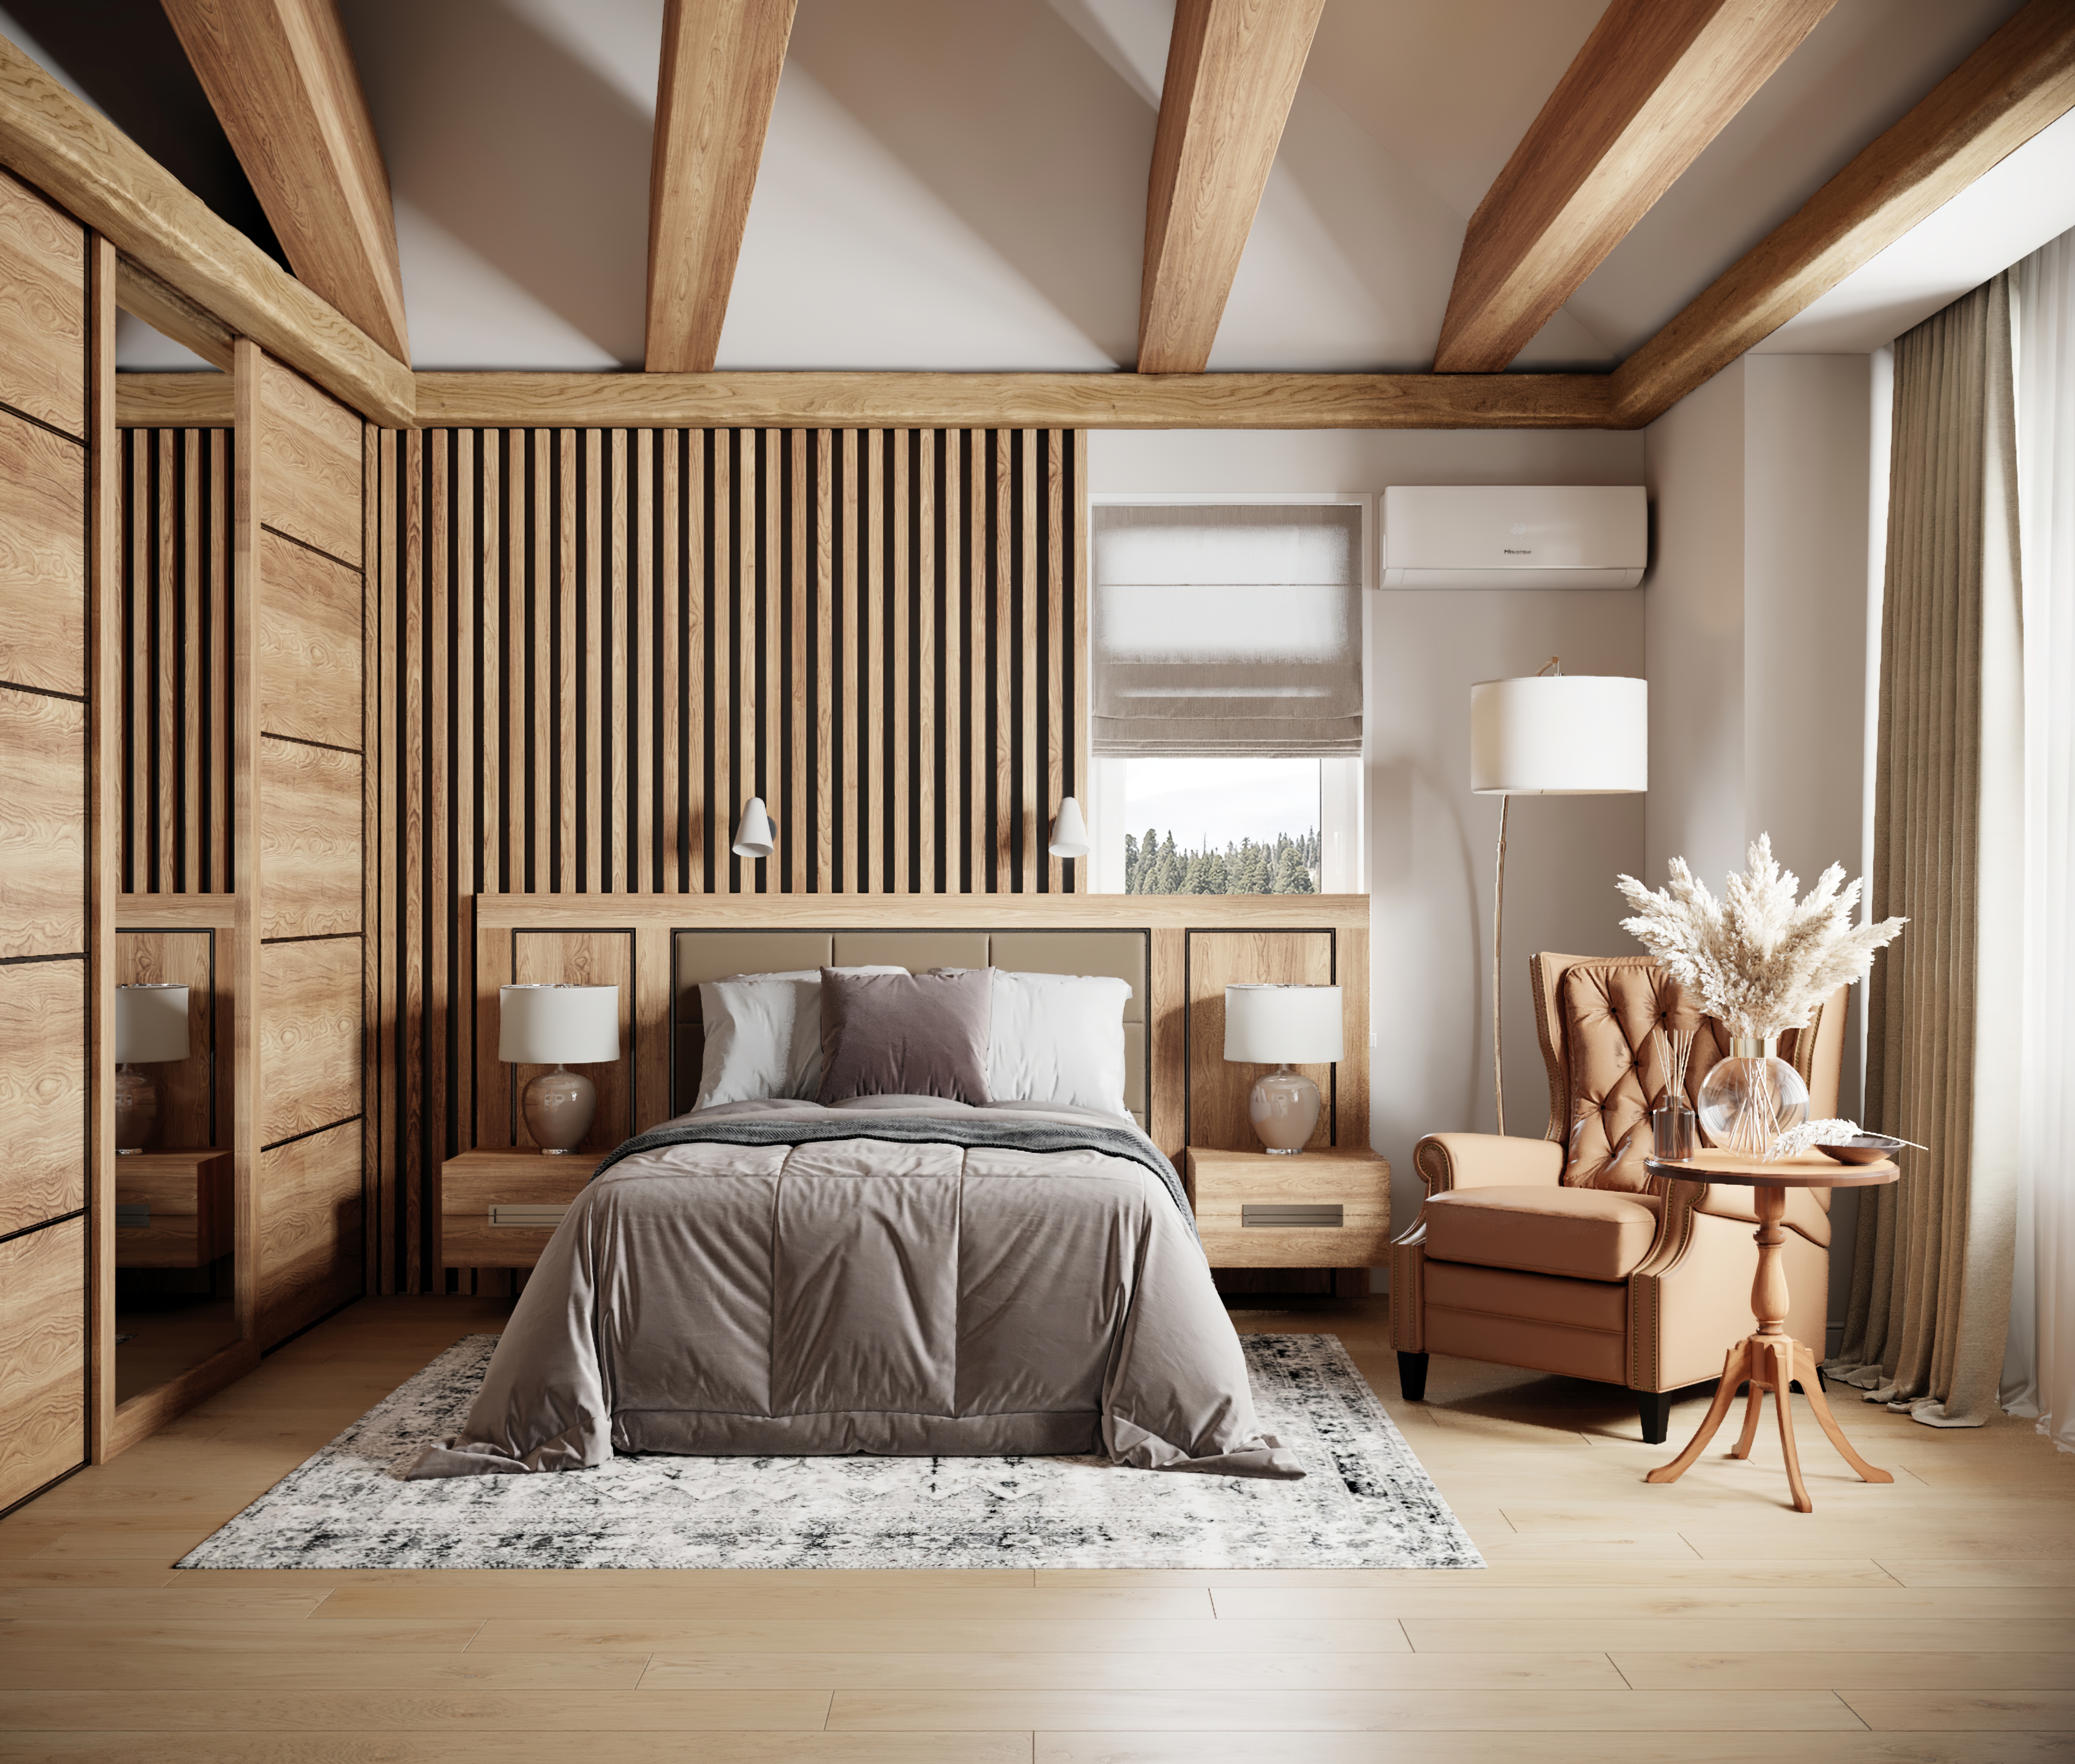 Как создается дизайн интерьера для деревянных домов из бруса